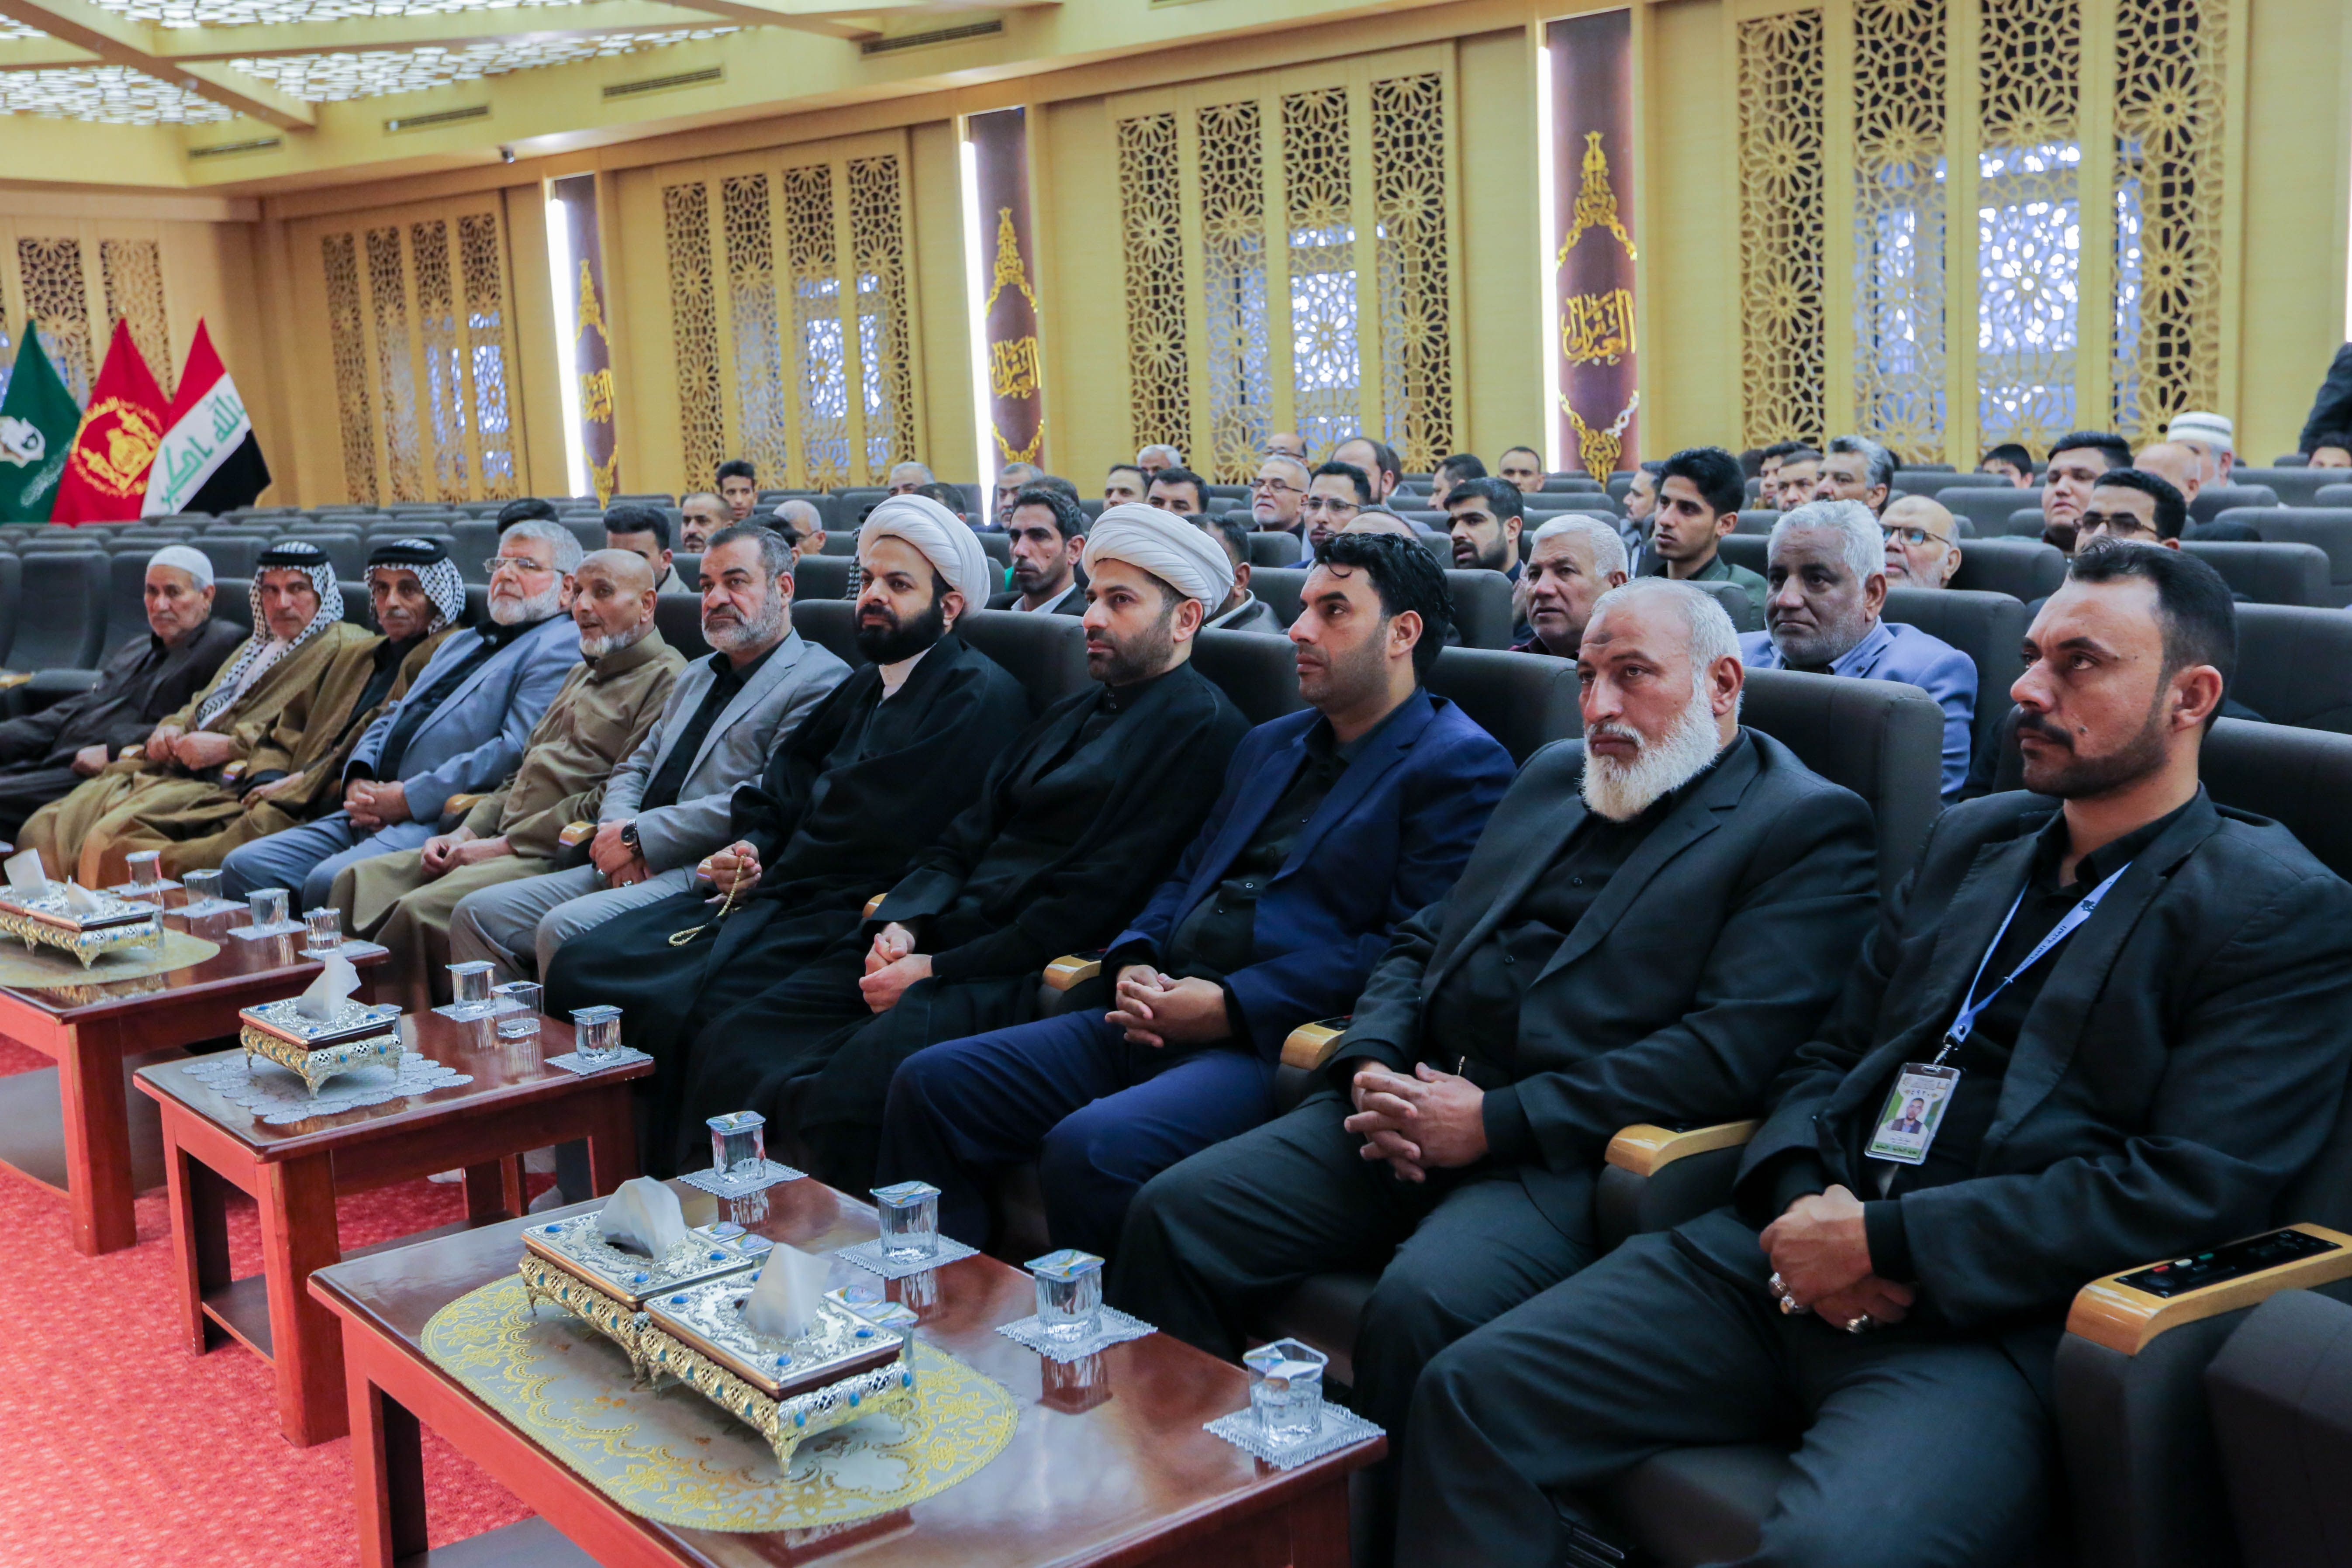 معهد القرآن الكريم يختتم دورتين تحقيقيتين بالطريقة العراقية والمصرية.